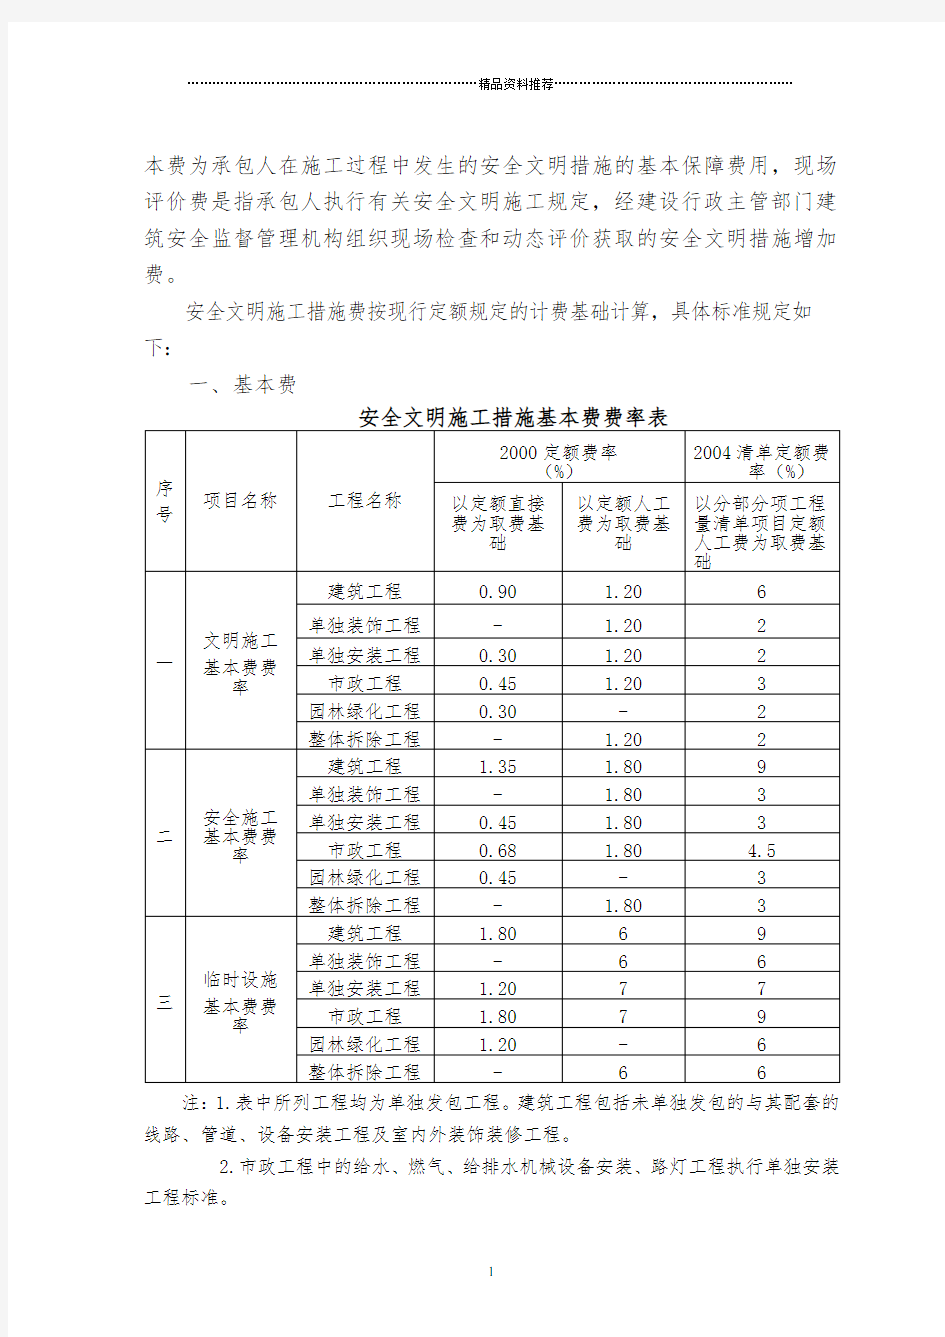 四川省建设工程安全文明施工措施费计价管理办法第一条为加强